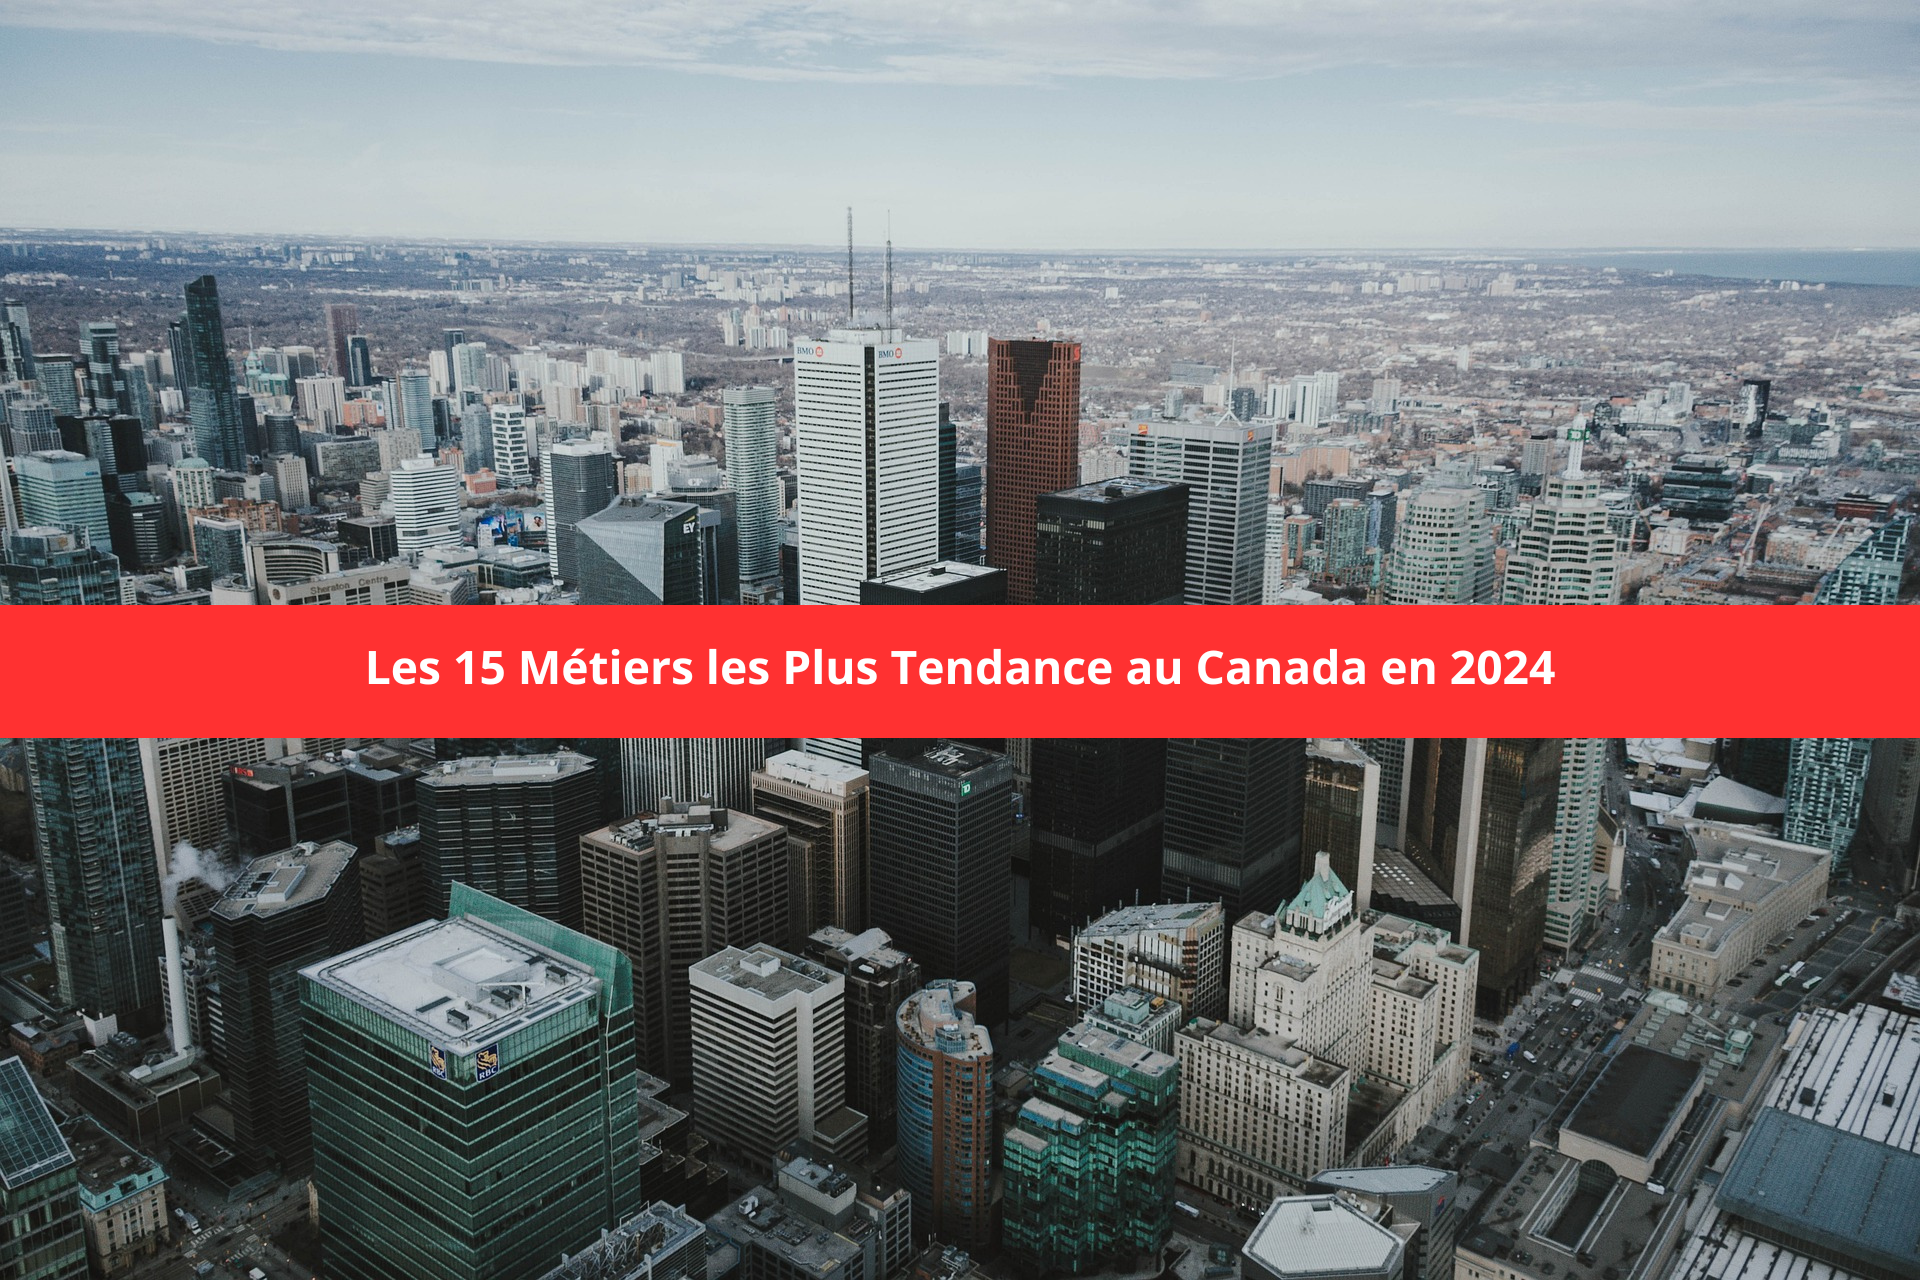 Les 15 Métiers les Plus Tendance au Canada en 2024